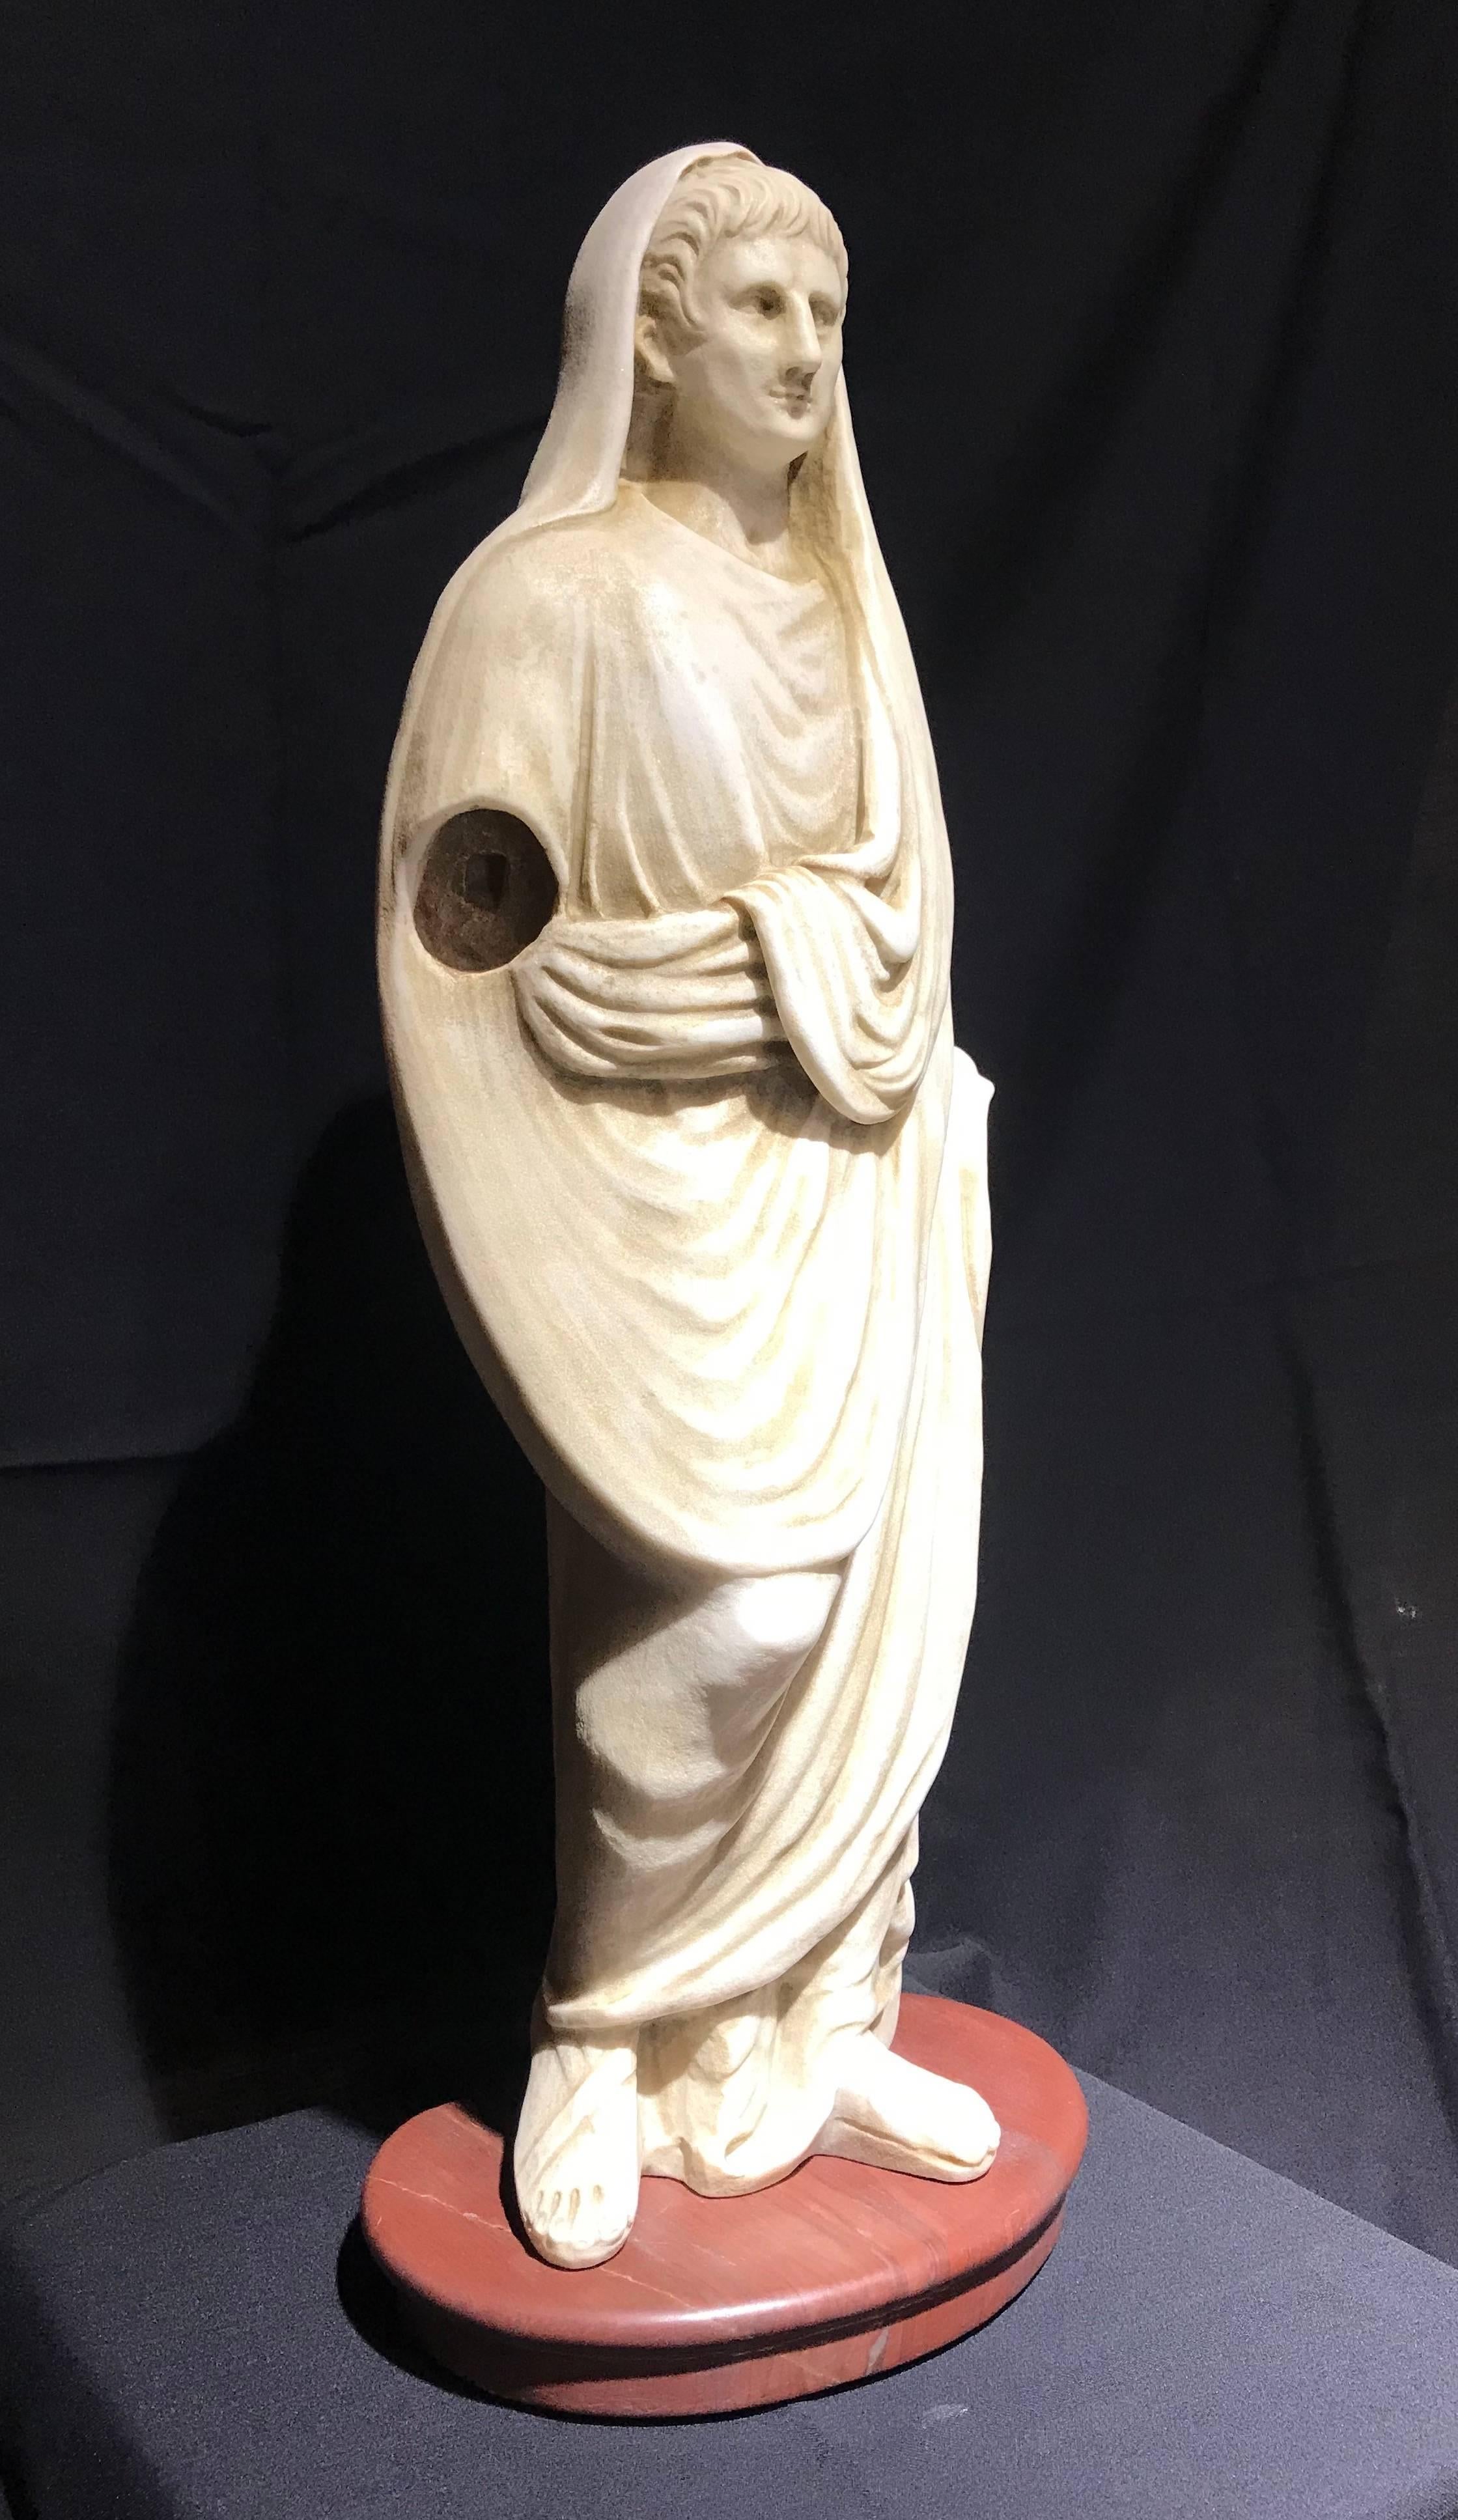 Statuary Marble White Marble Italian Sculpture Classical Roman of Augustus Pontifex Maximus